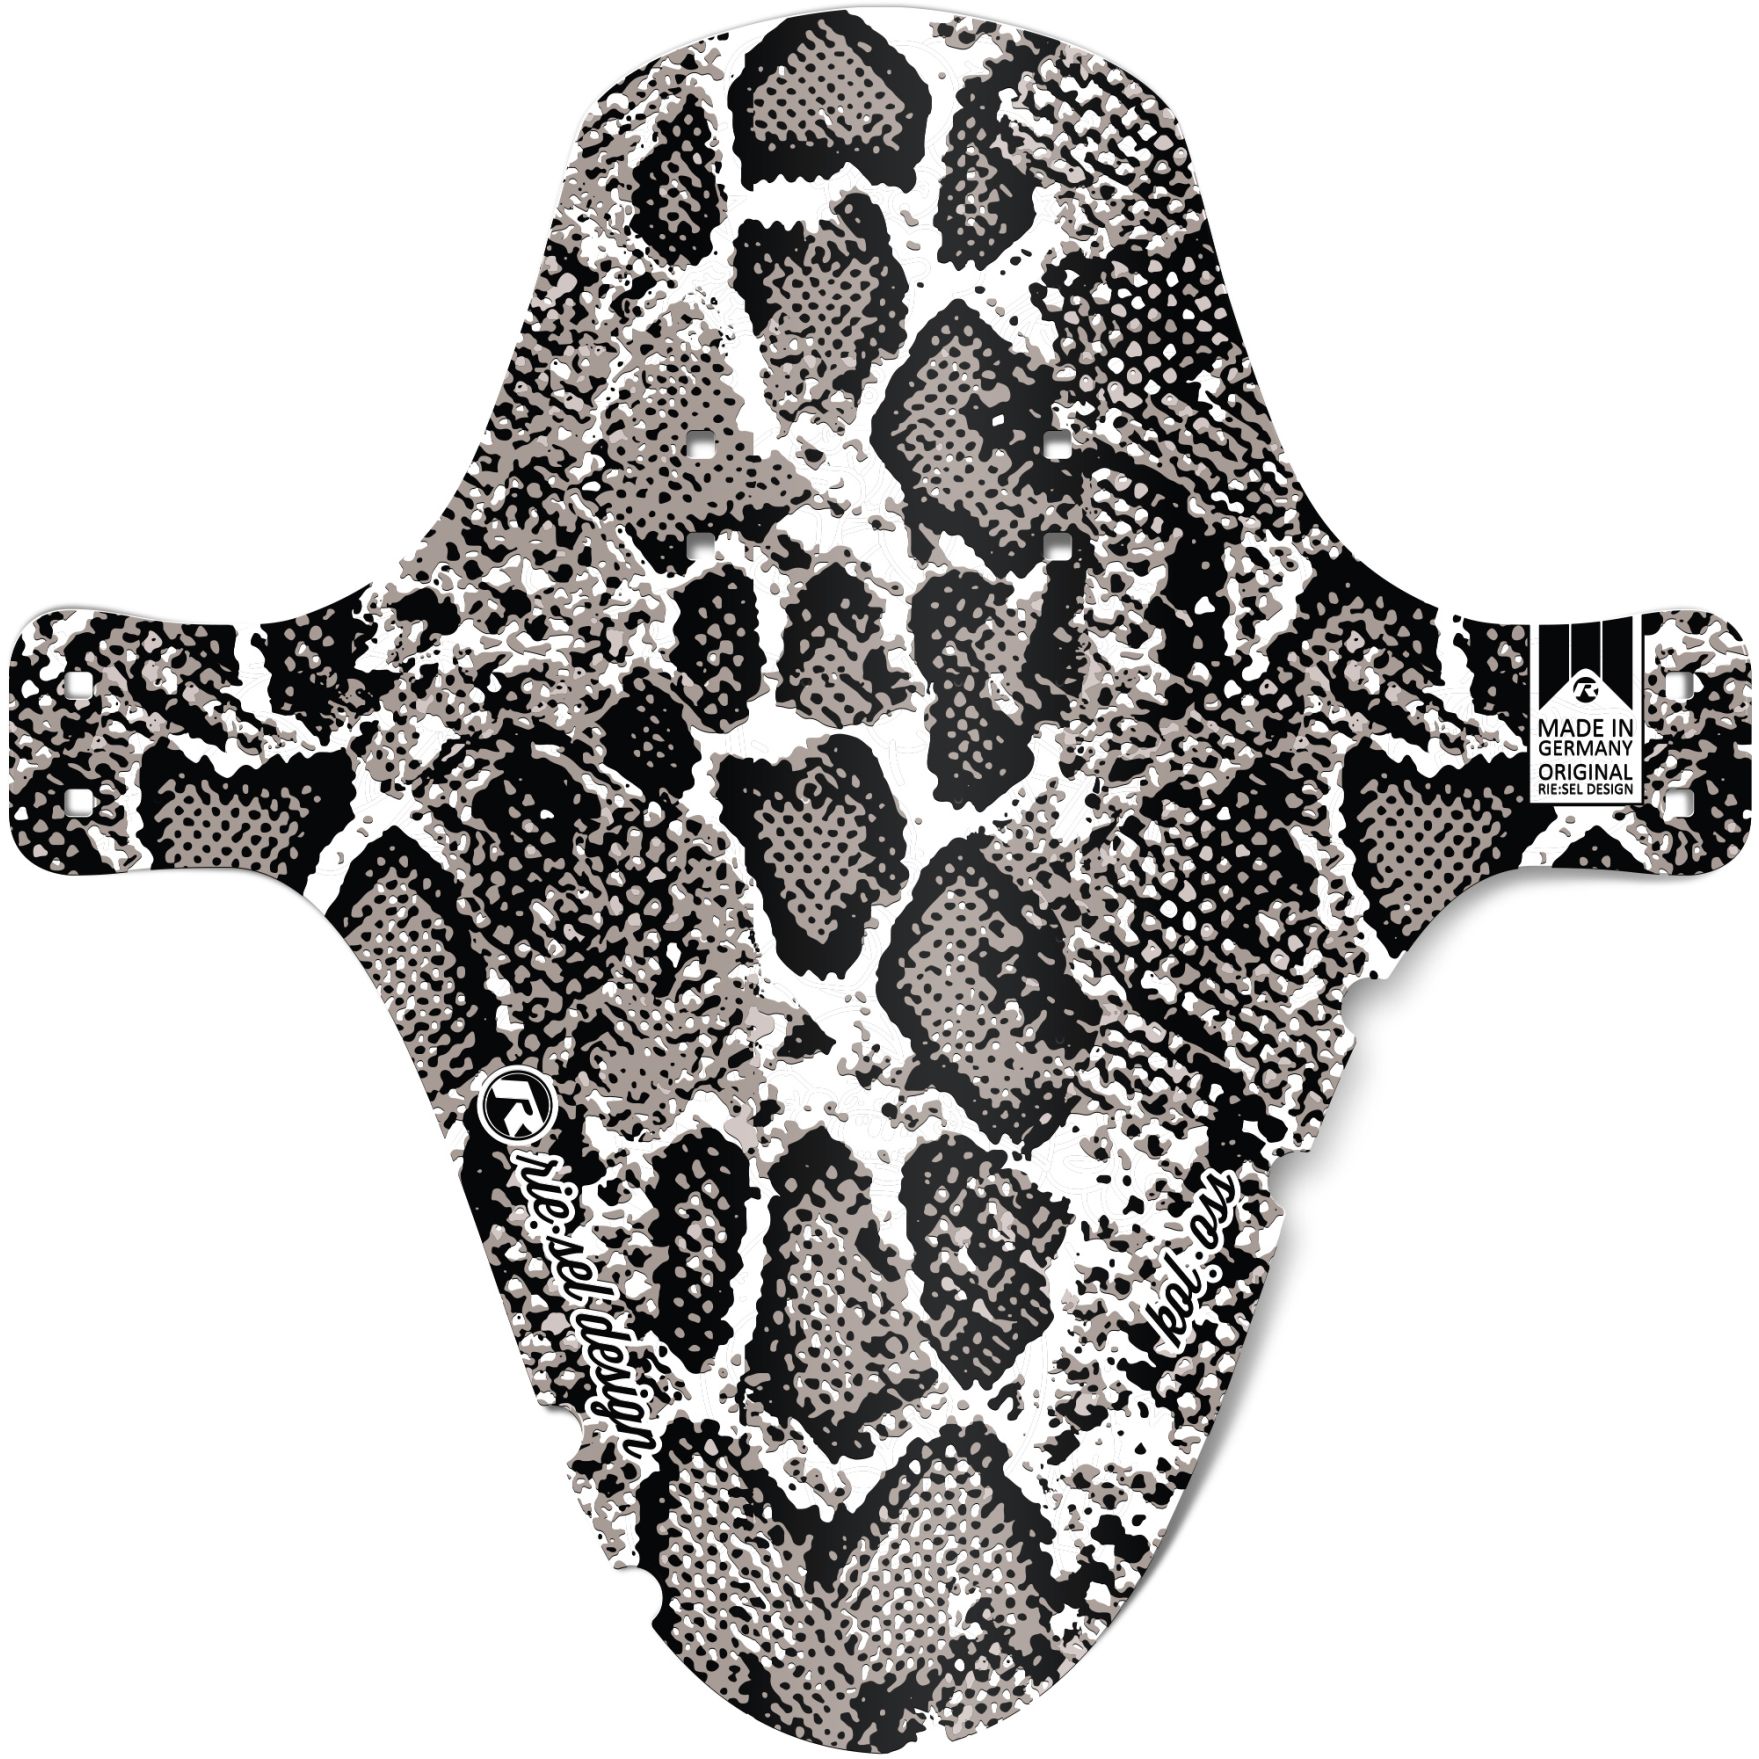 Produktbild von rie:sel design kol:oss Schutzblech - snake | transparent material